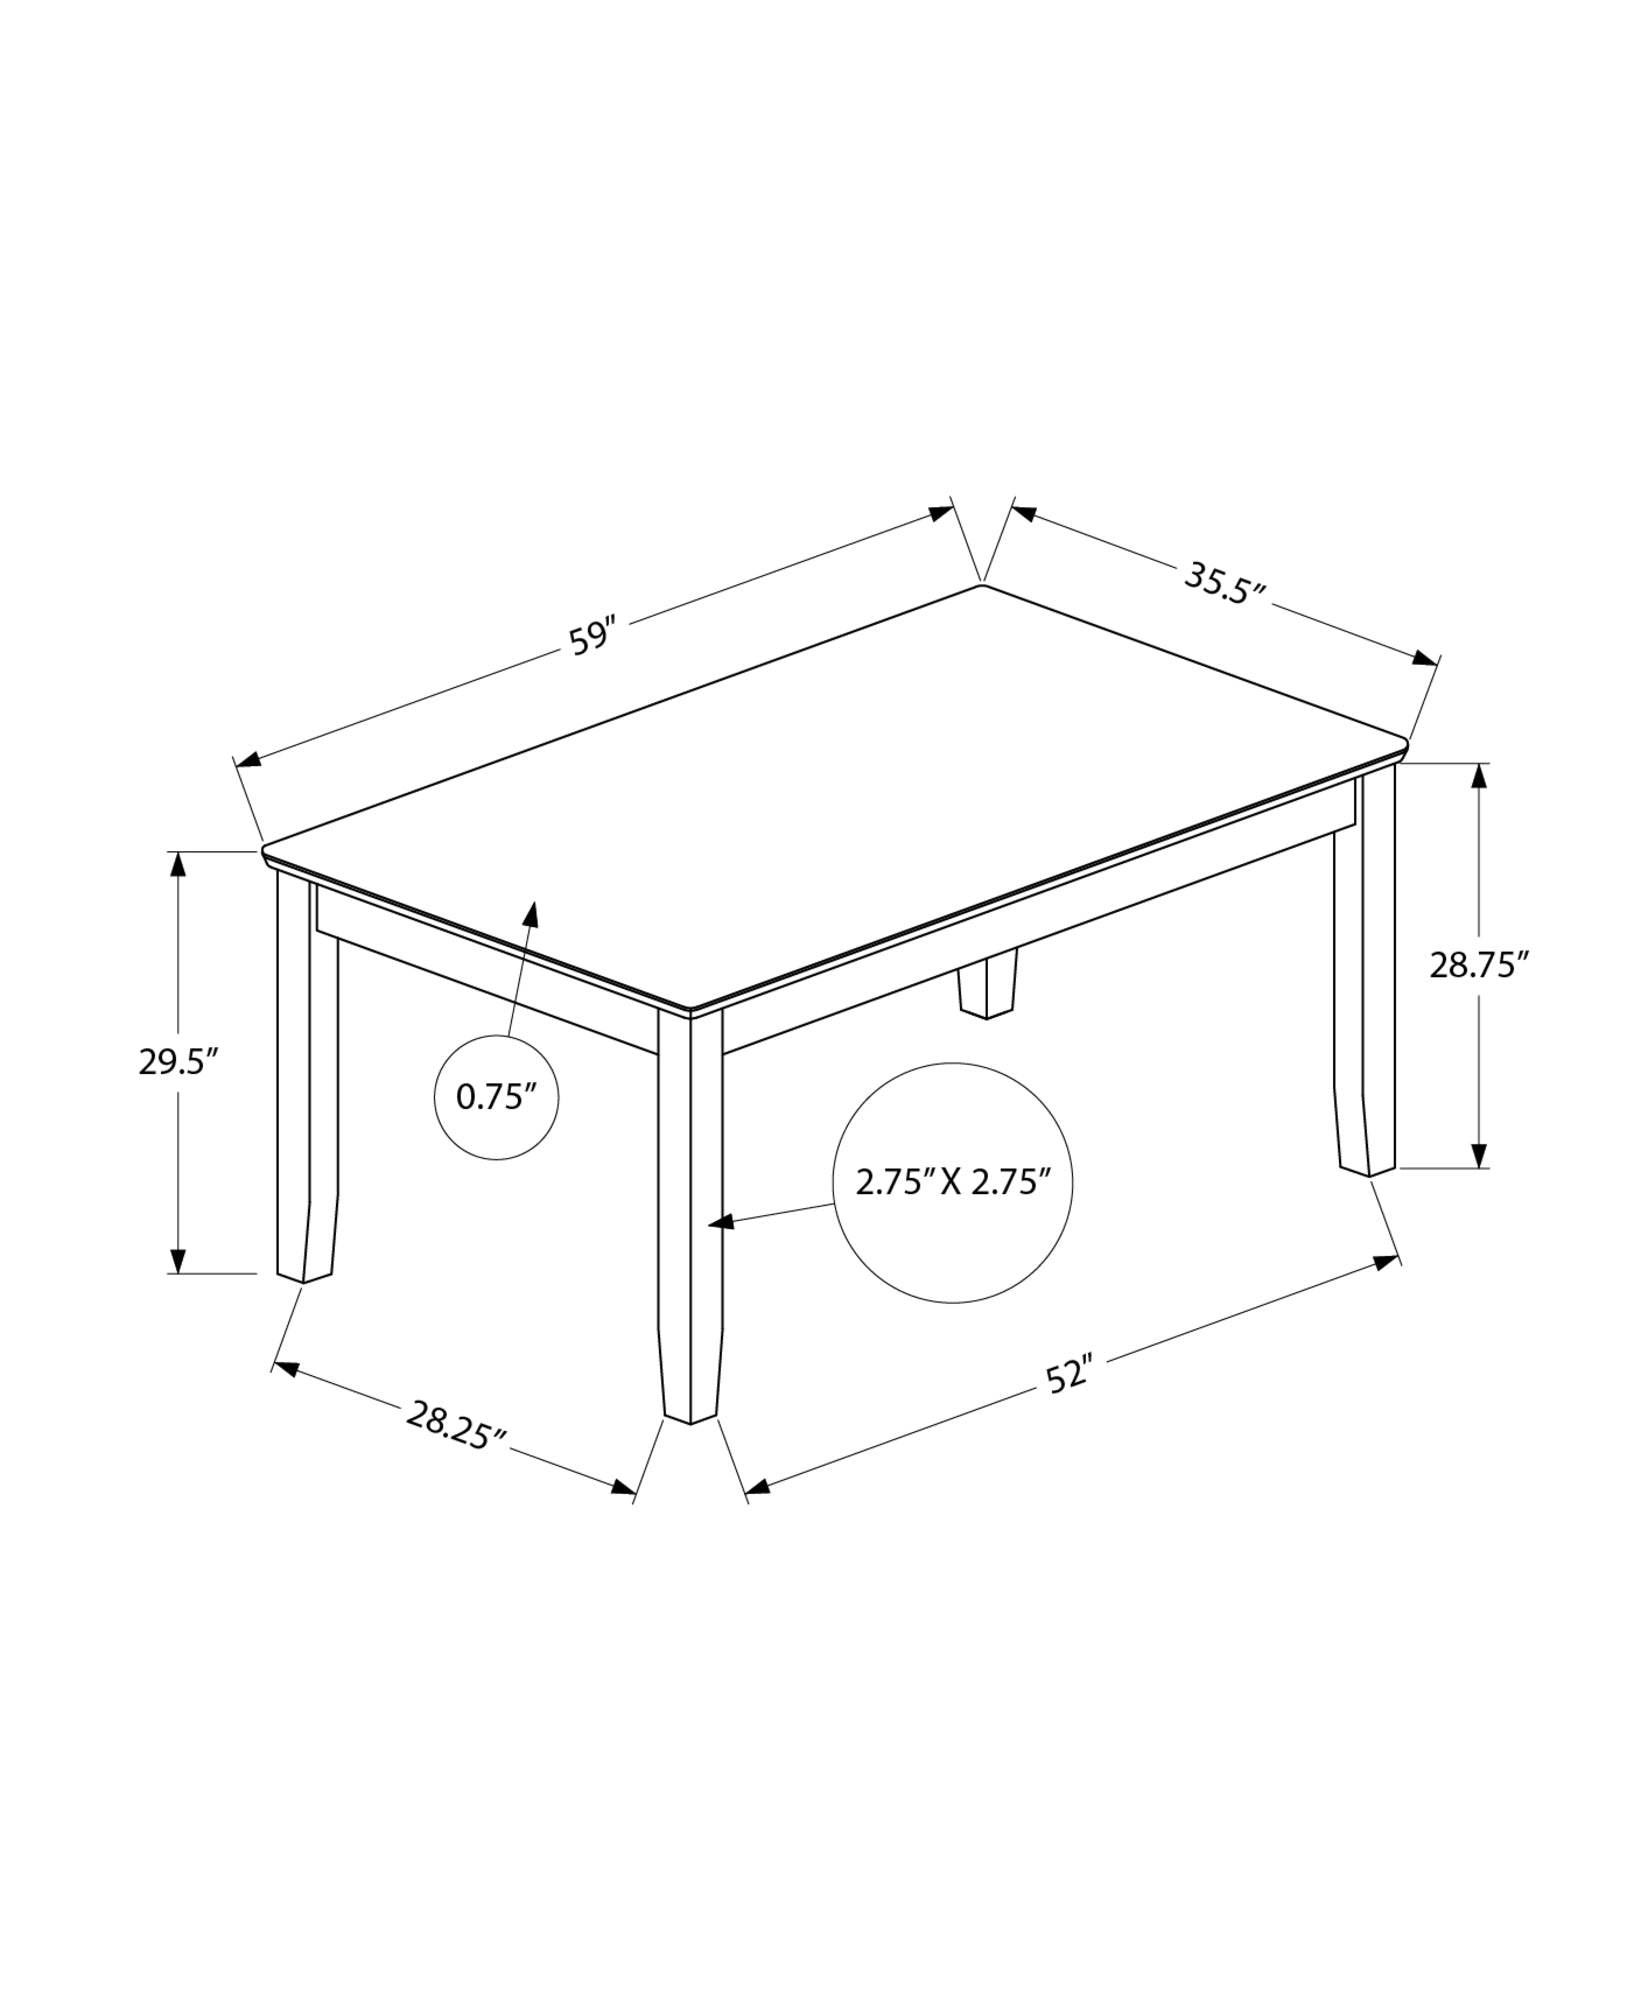 MN-321370    Dining Table, 60" Rectangular, Veneer Top, Solid Wood Legs, Dining Room, Kitchen, Brown Veneer, Brown Wood, Transitional